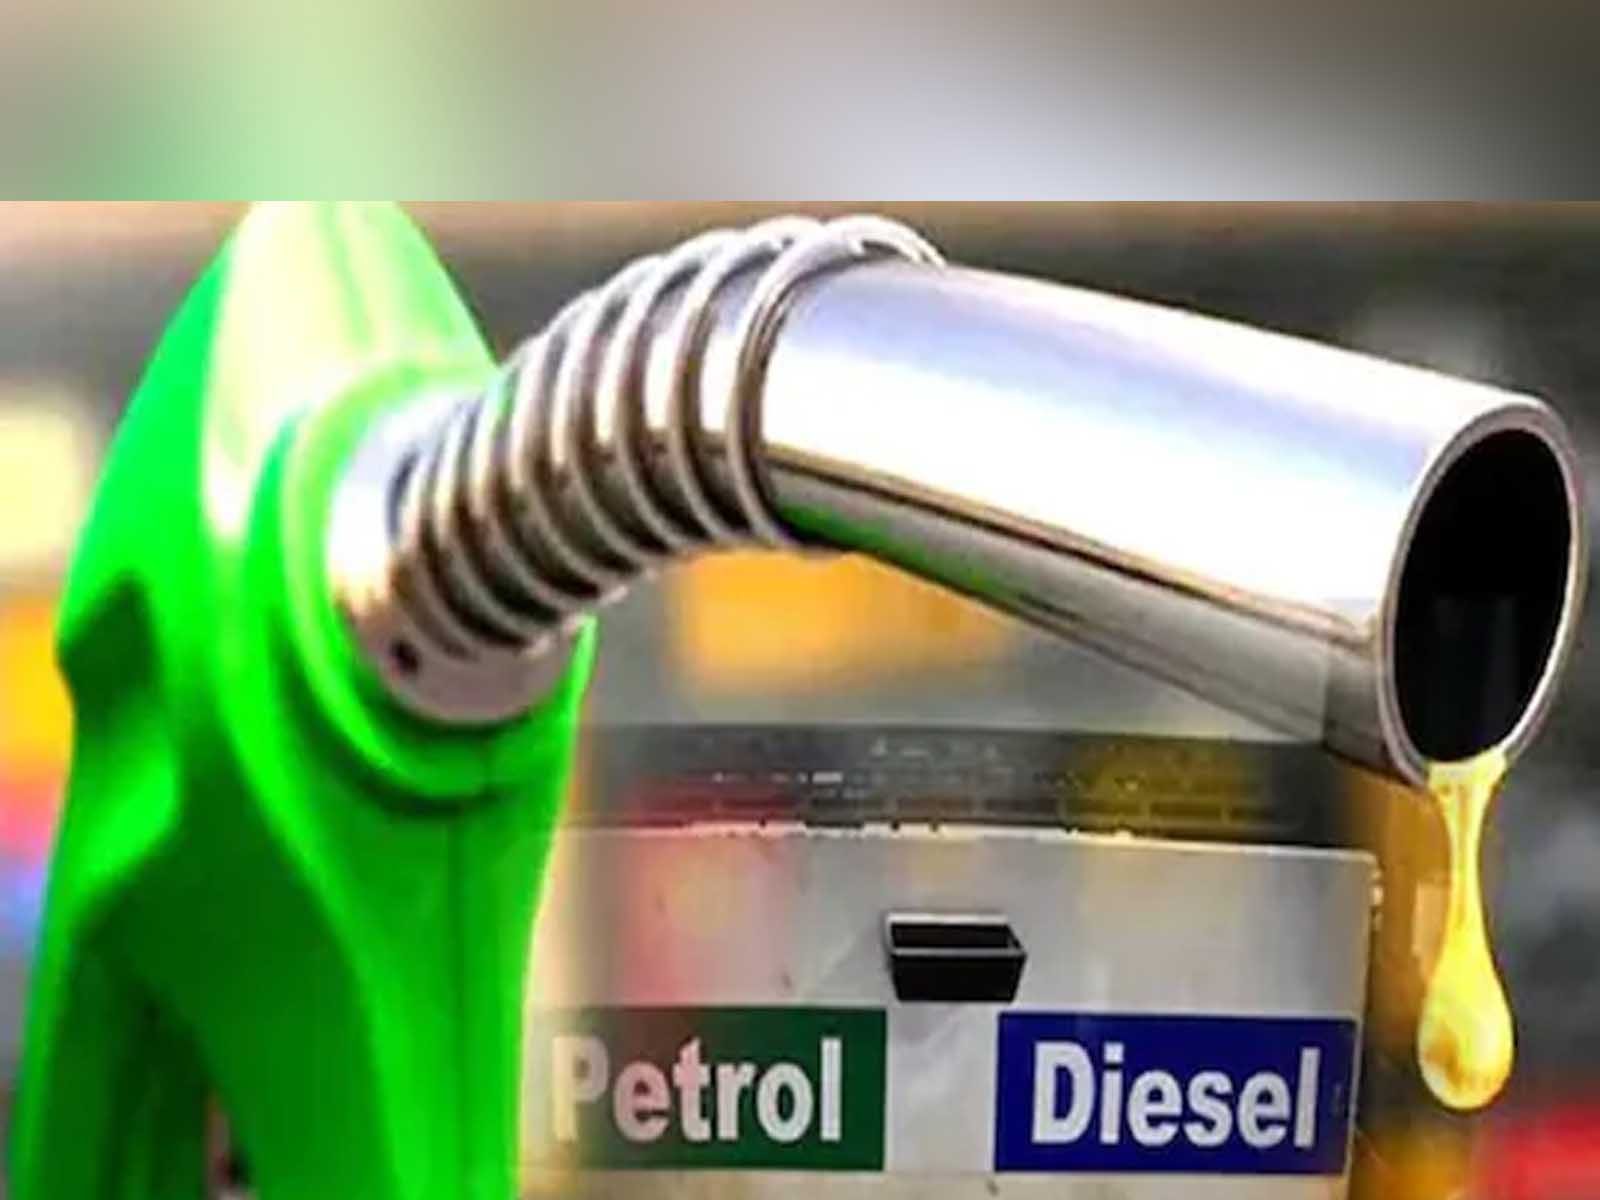 Petrol-Diesel: ਨਵੇਂ ਸਾਲ ਤੋਂ ਮਿਲੇਗਾ ਸਸਤਾ ਪੈਟਰੋਲ-ਡੀਜ਼ਲ, ਜਾਣੋ ਕੀ ਹੈ ਸਰਕਾਰ ਦਾ ਪਲਾਨ  (ਸੰਕੇਤਿਕ ਤਸਵੀਰ)